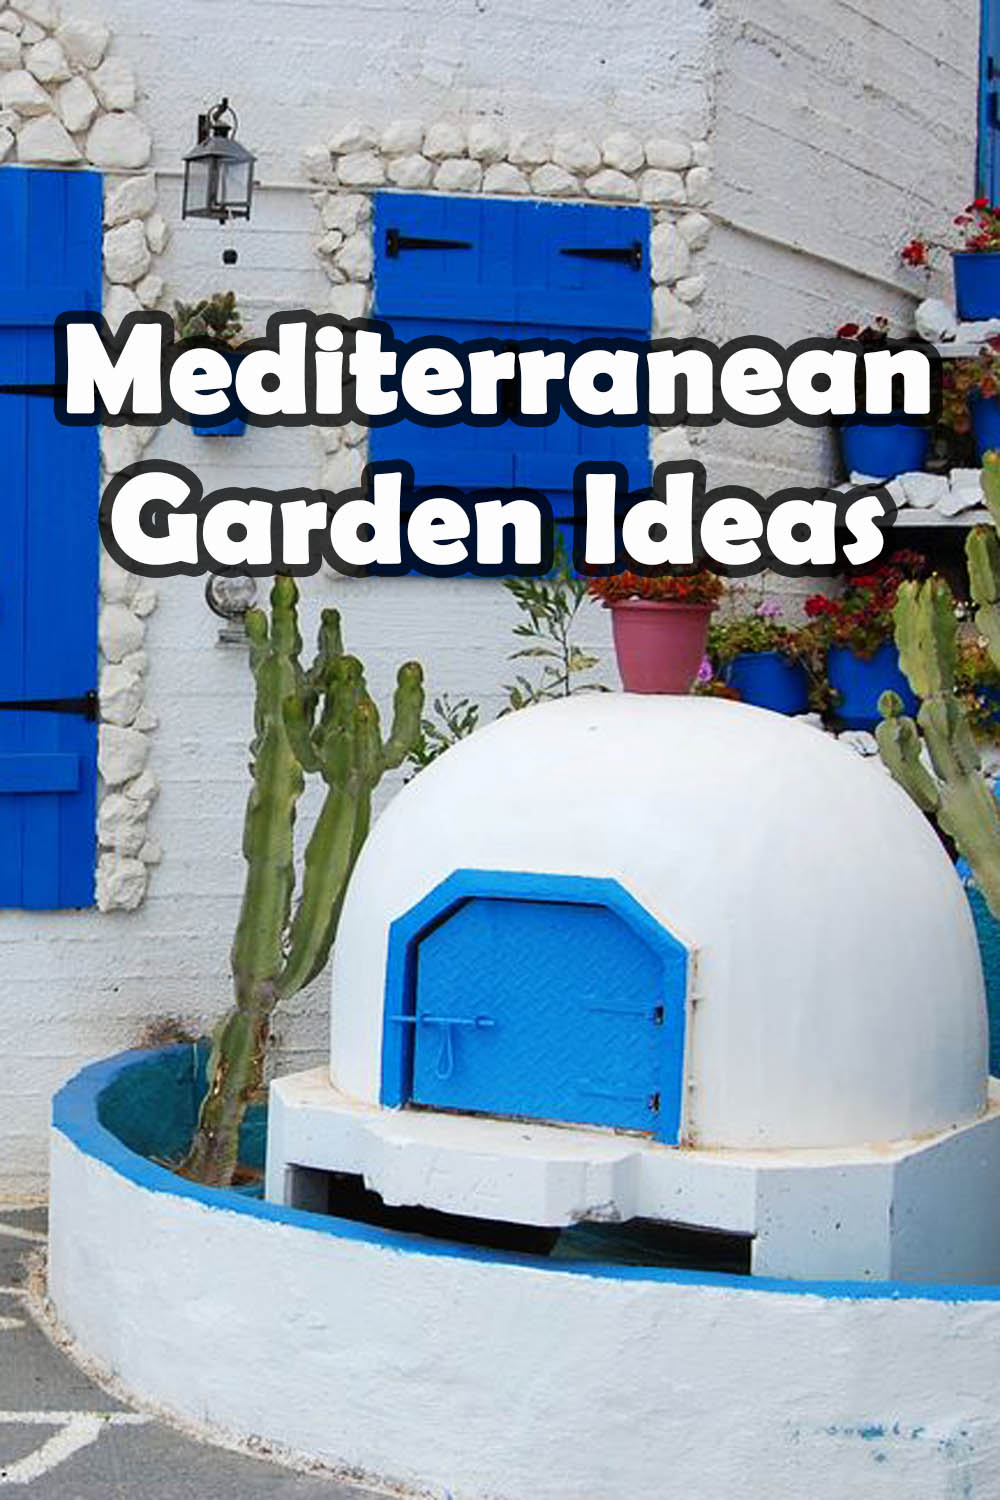 Mediterranean garden ideas